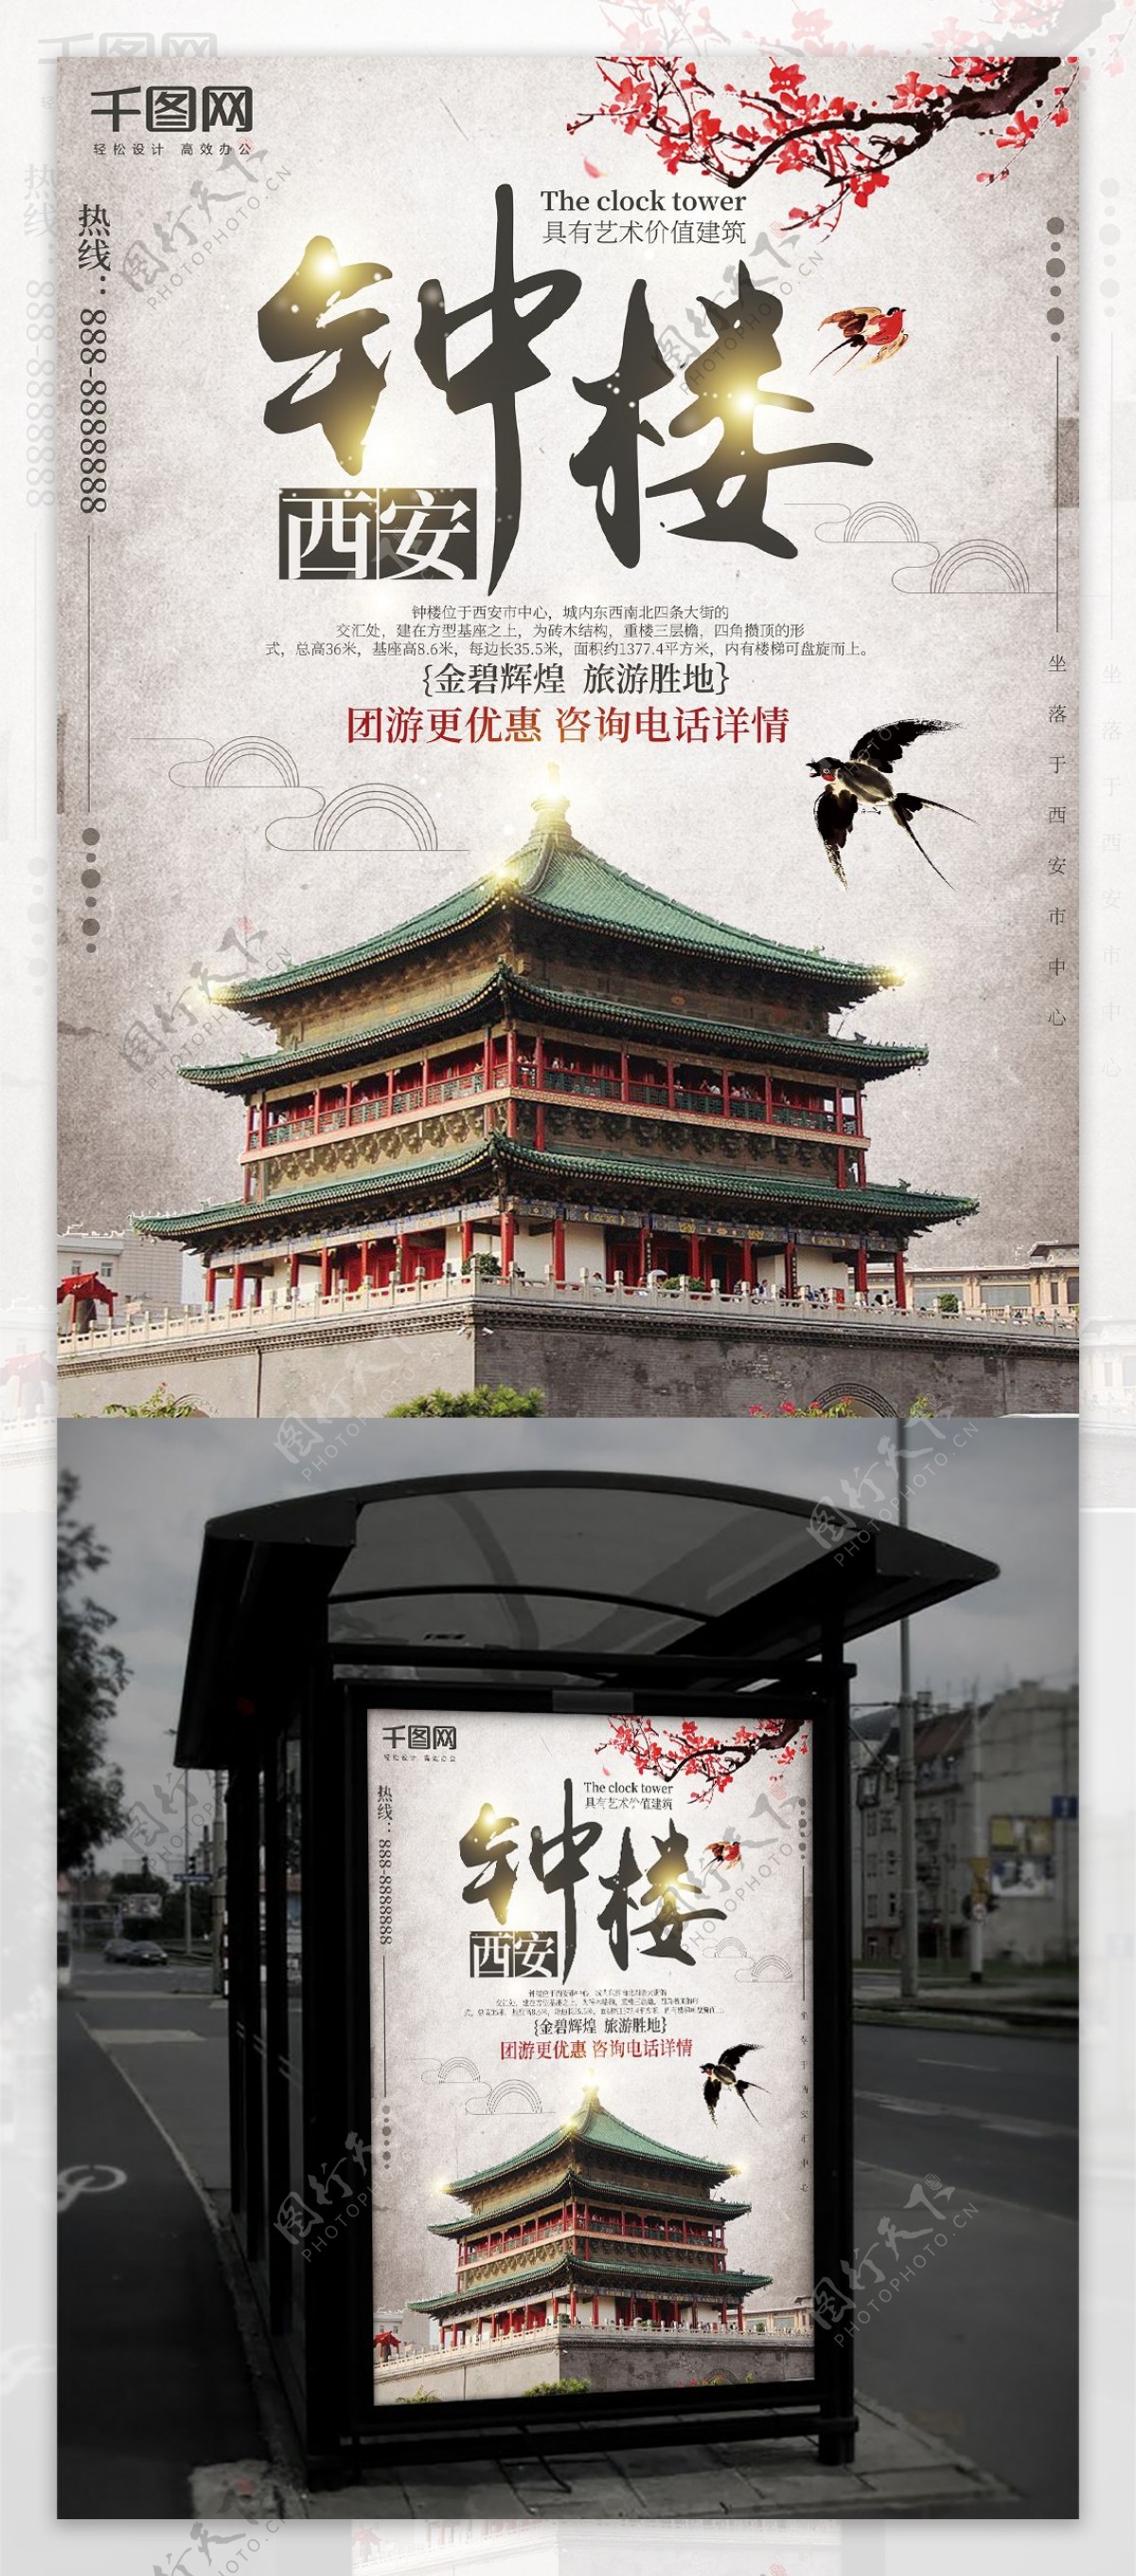 白色中国风西安钟楼旅游海报